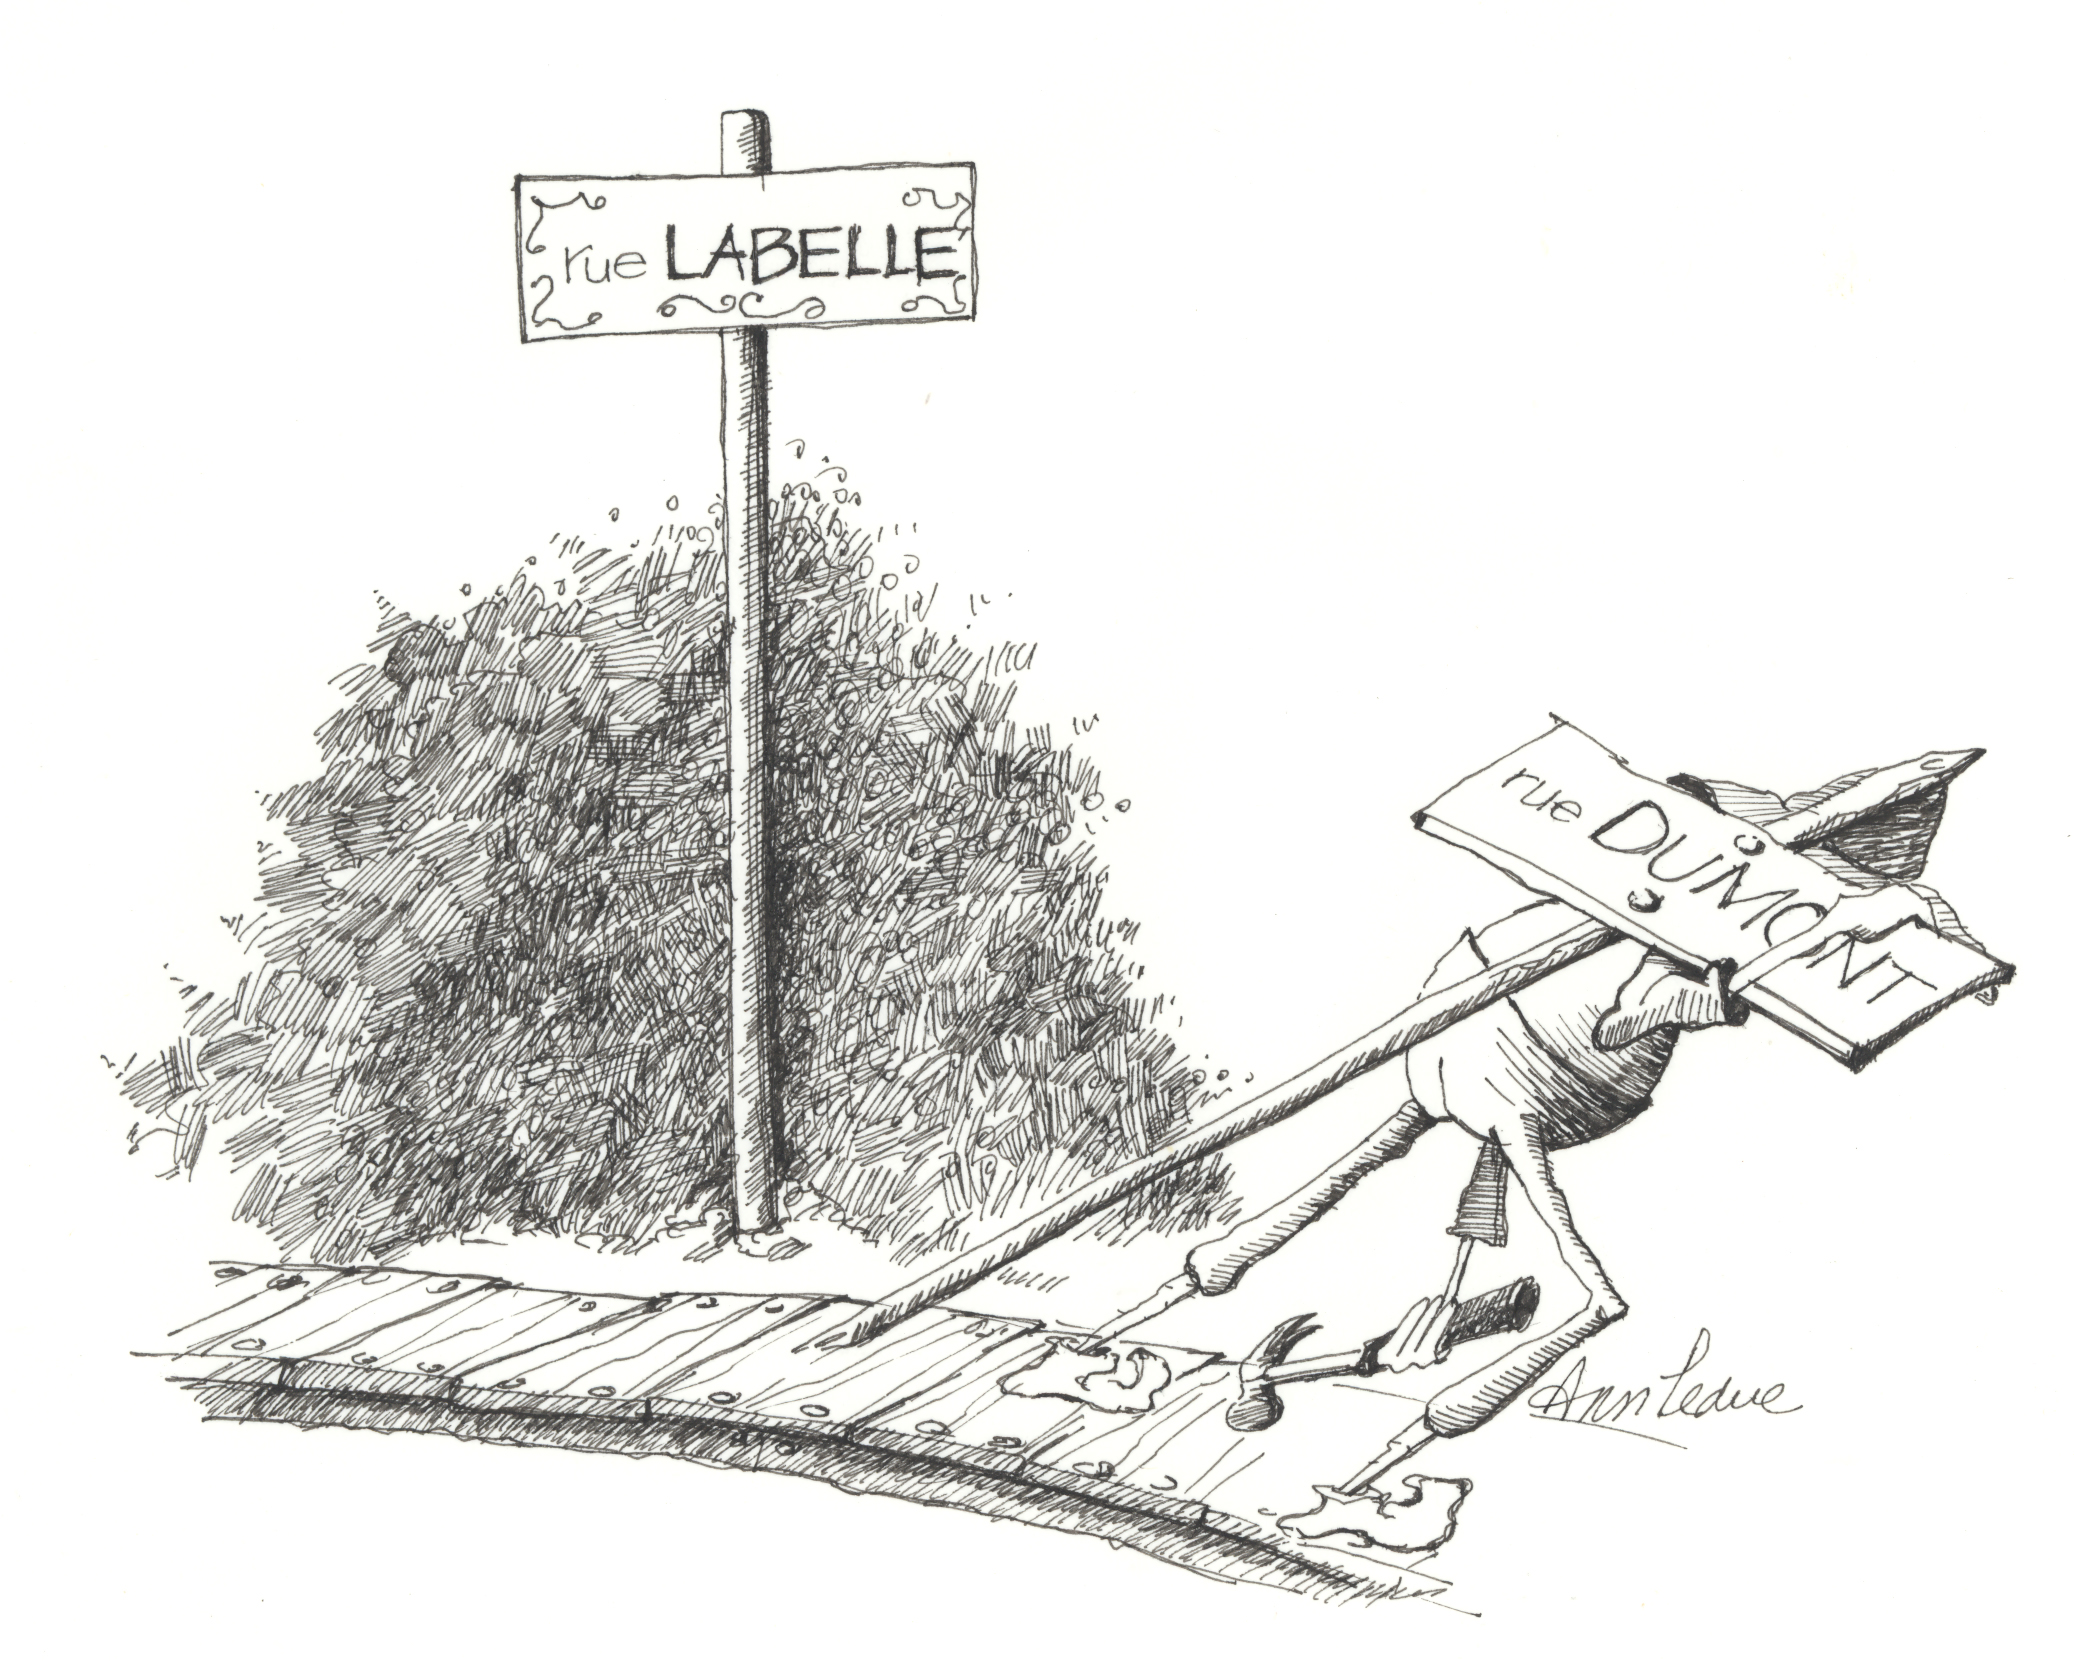 Dessin à l’encre noire représentant une pancarte indiquant le nom de la rue Labelle. Tout près, un homme transporte sur son épaule une pancarte indiquant le nom de la rue Dumont pour illustrer qu’elle est remplacée.